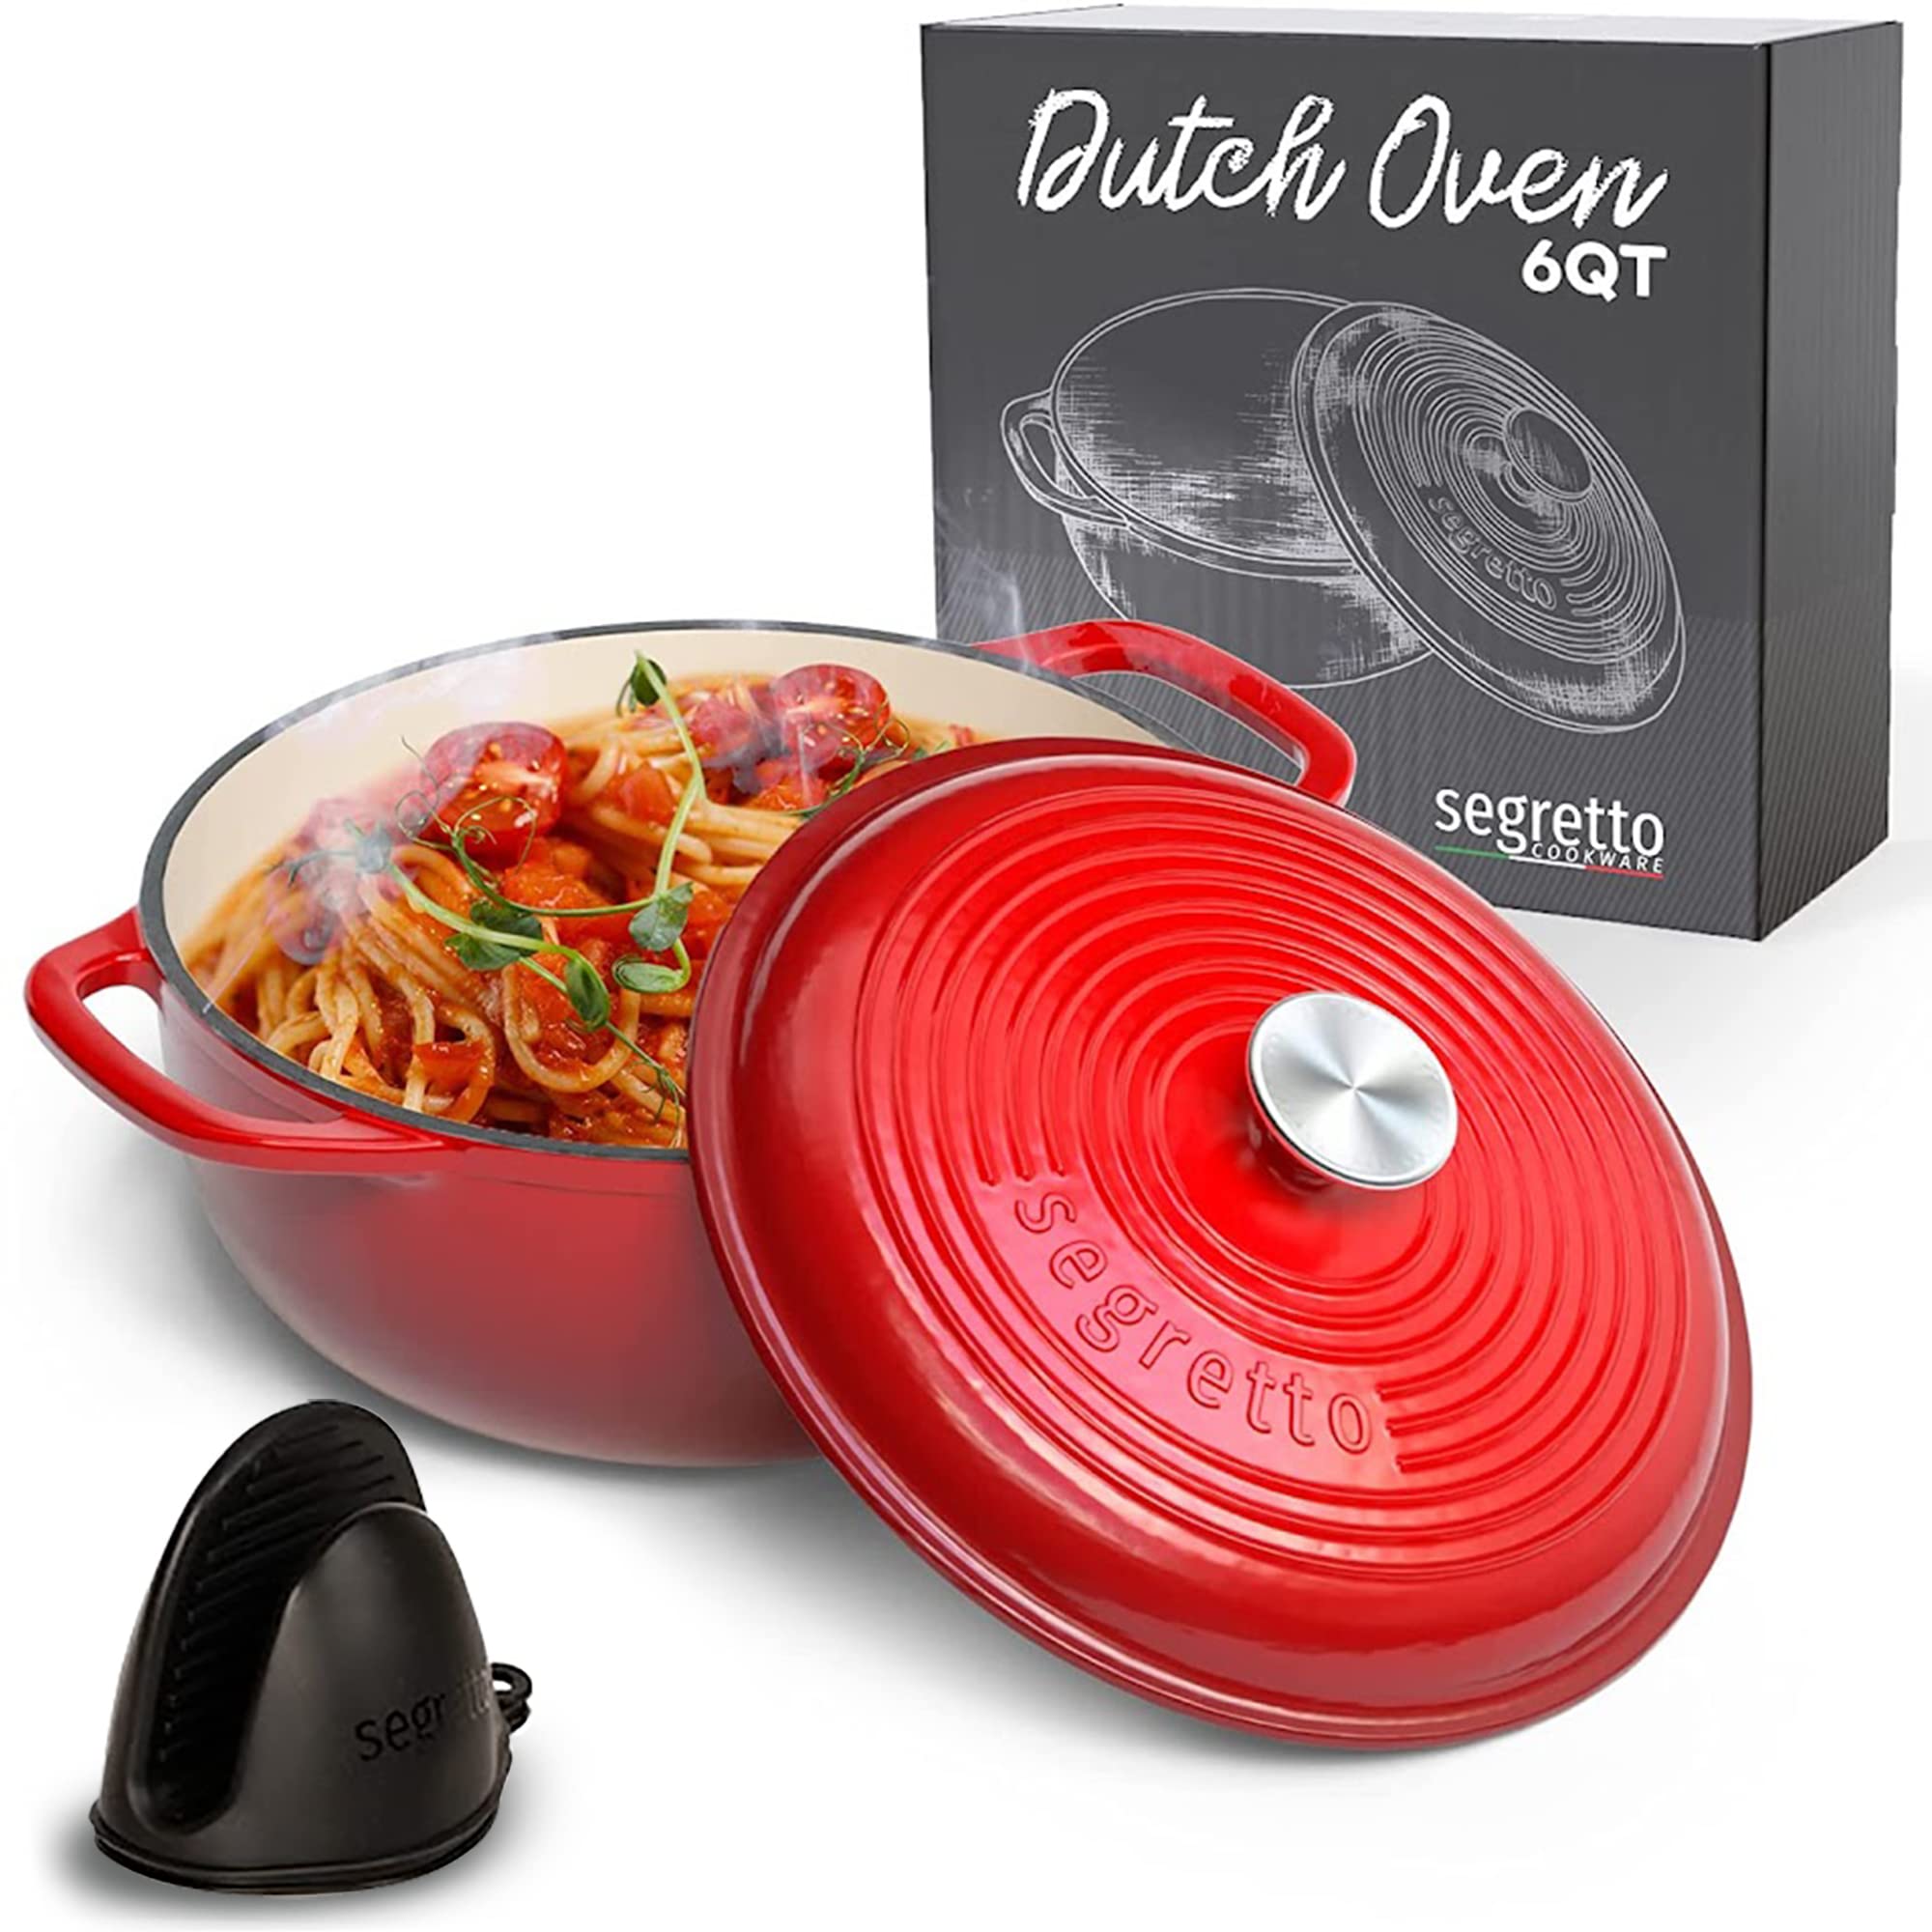 Segretto Dutch Oven